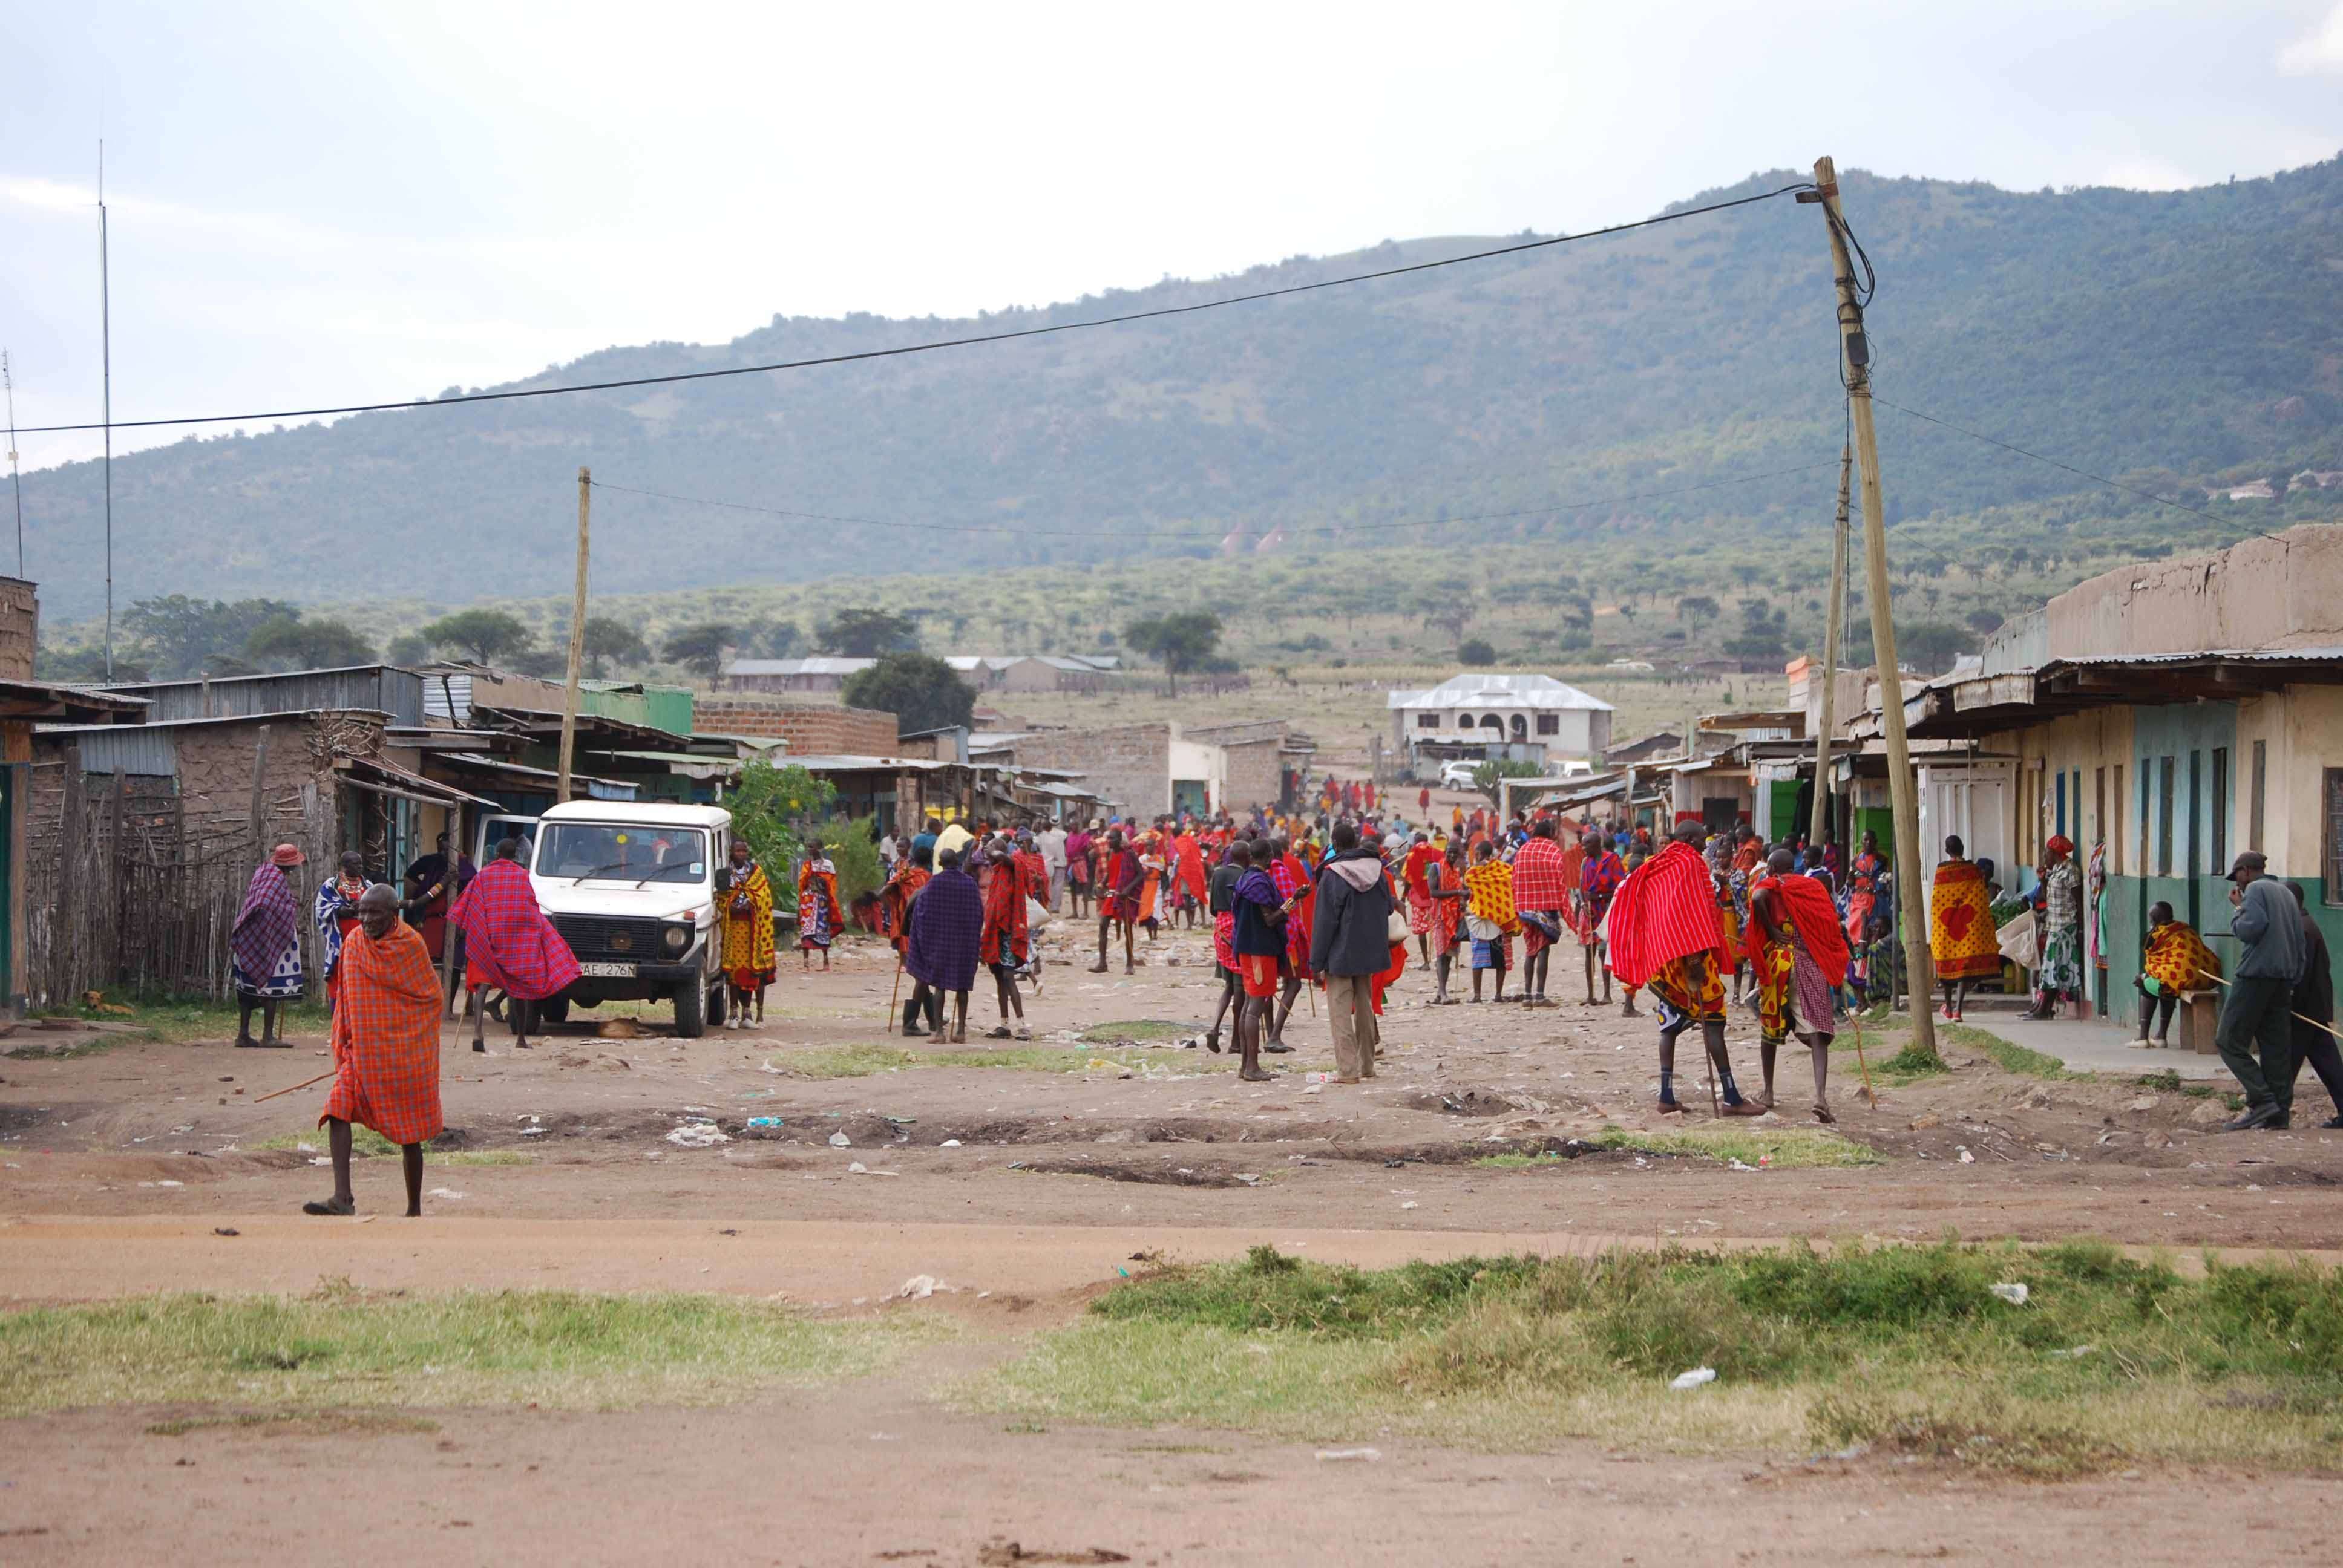 El mercado masai, un intento fallido de ver el cruce y algunas mariposas - Regreso al Mara - Kenia (18)